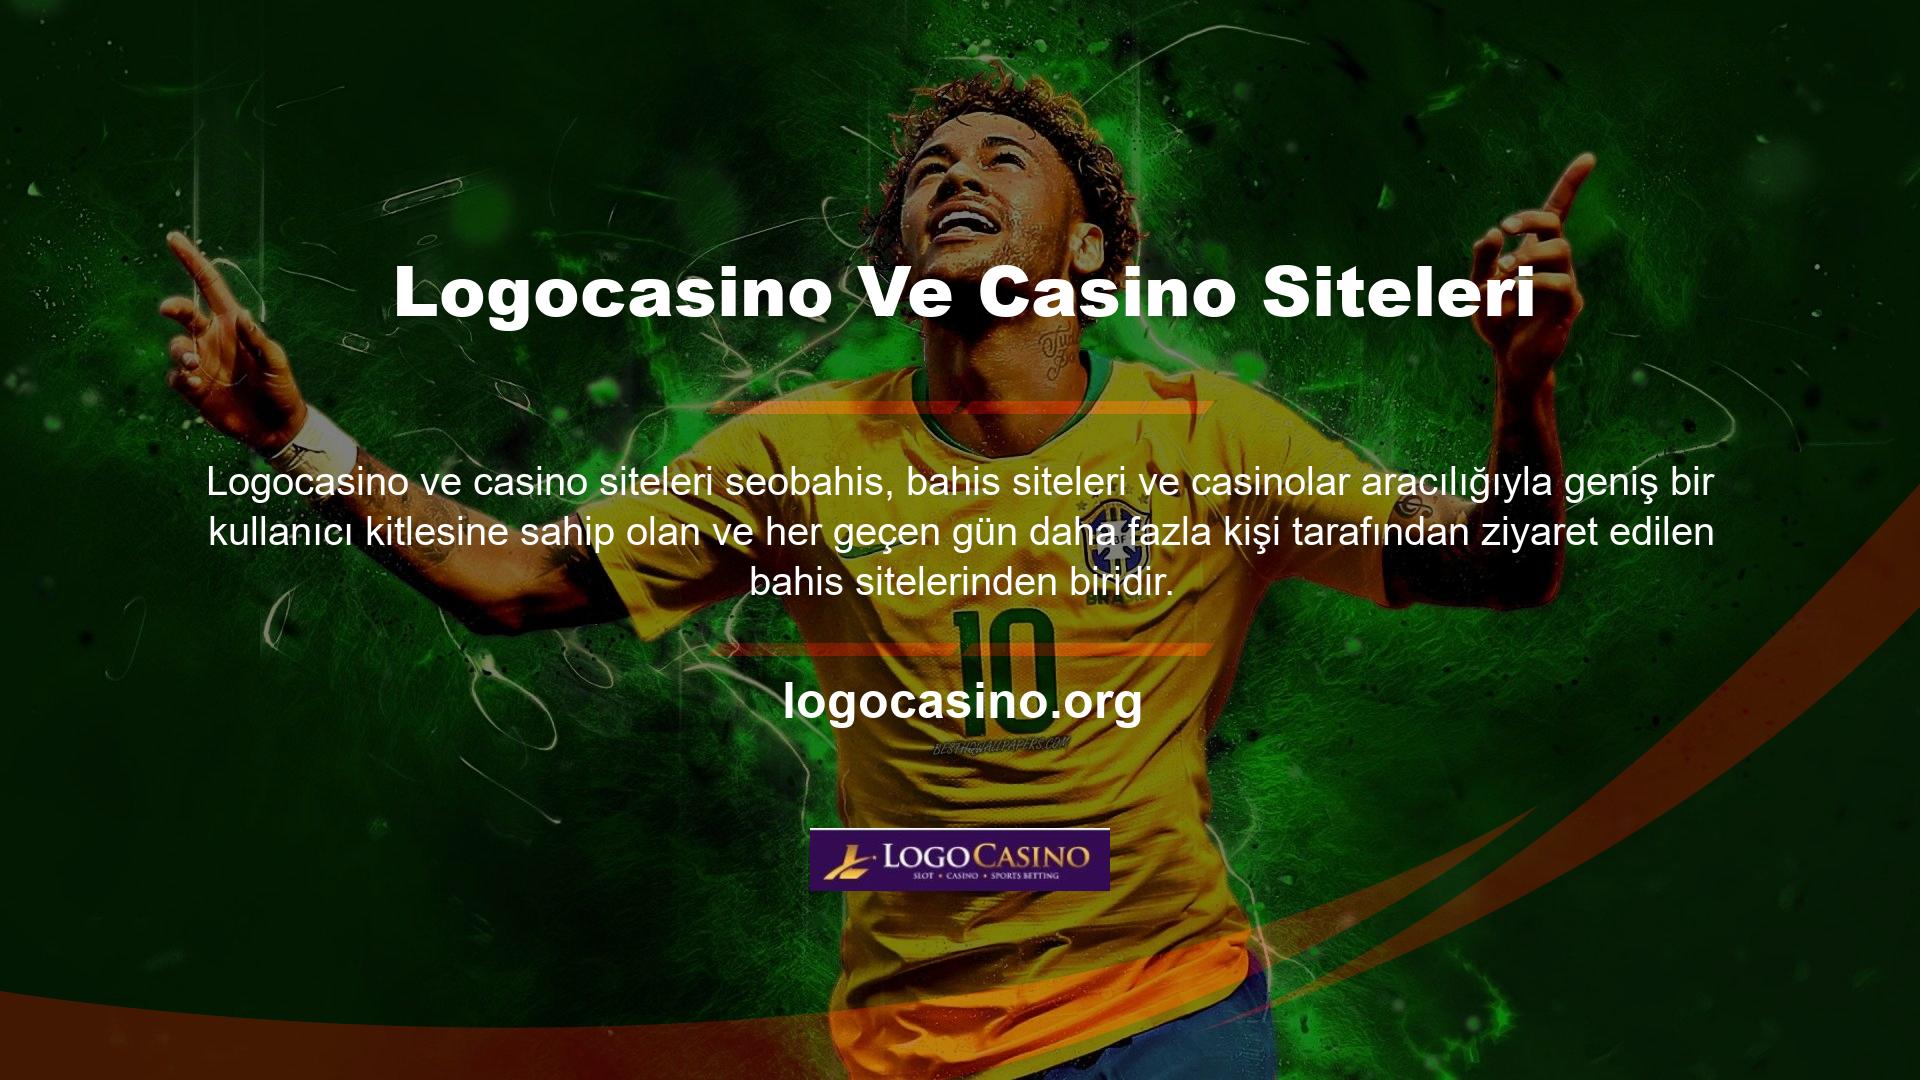 Logocasino ve casino sitelerine göz atarak üyelik teklifleri oluşturabilir ve Logocasino sunduğu fırsatlardan yararlanabilirsiniz